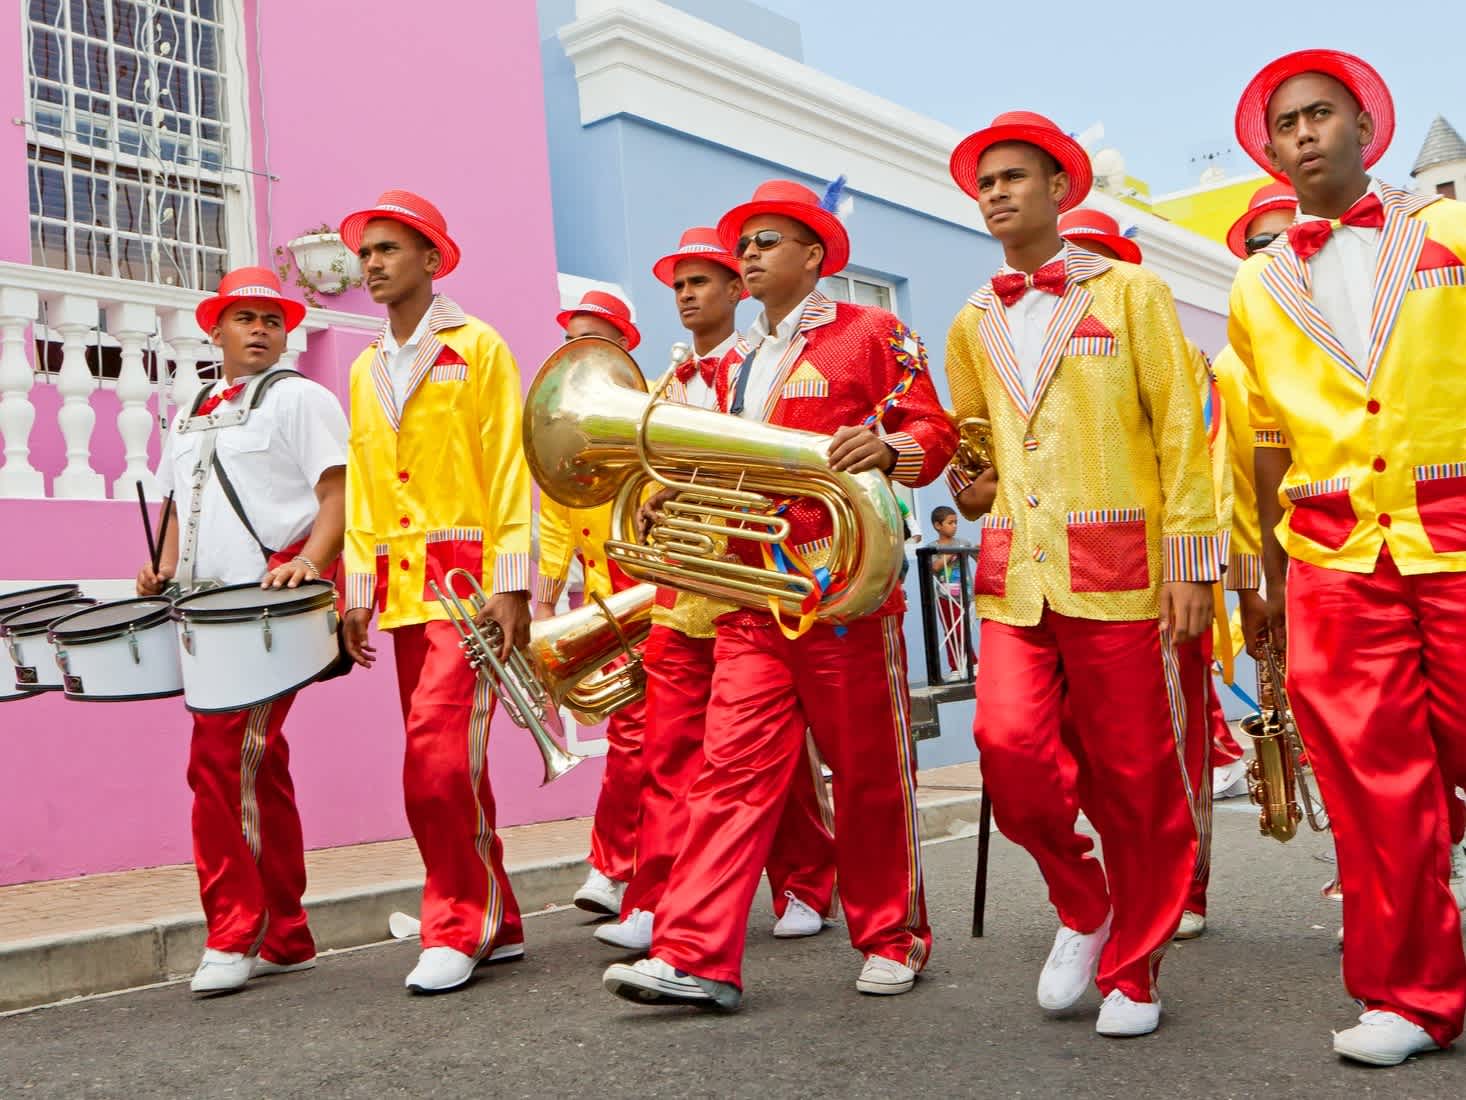 Des musiciens en costumes colorés devant une façade de maison multicolore